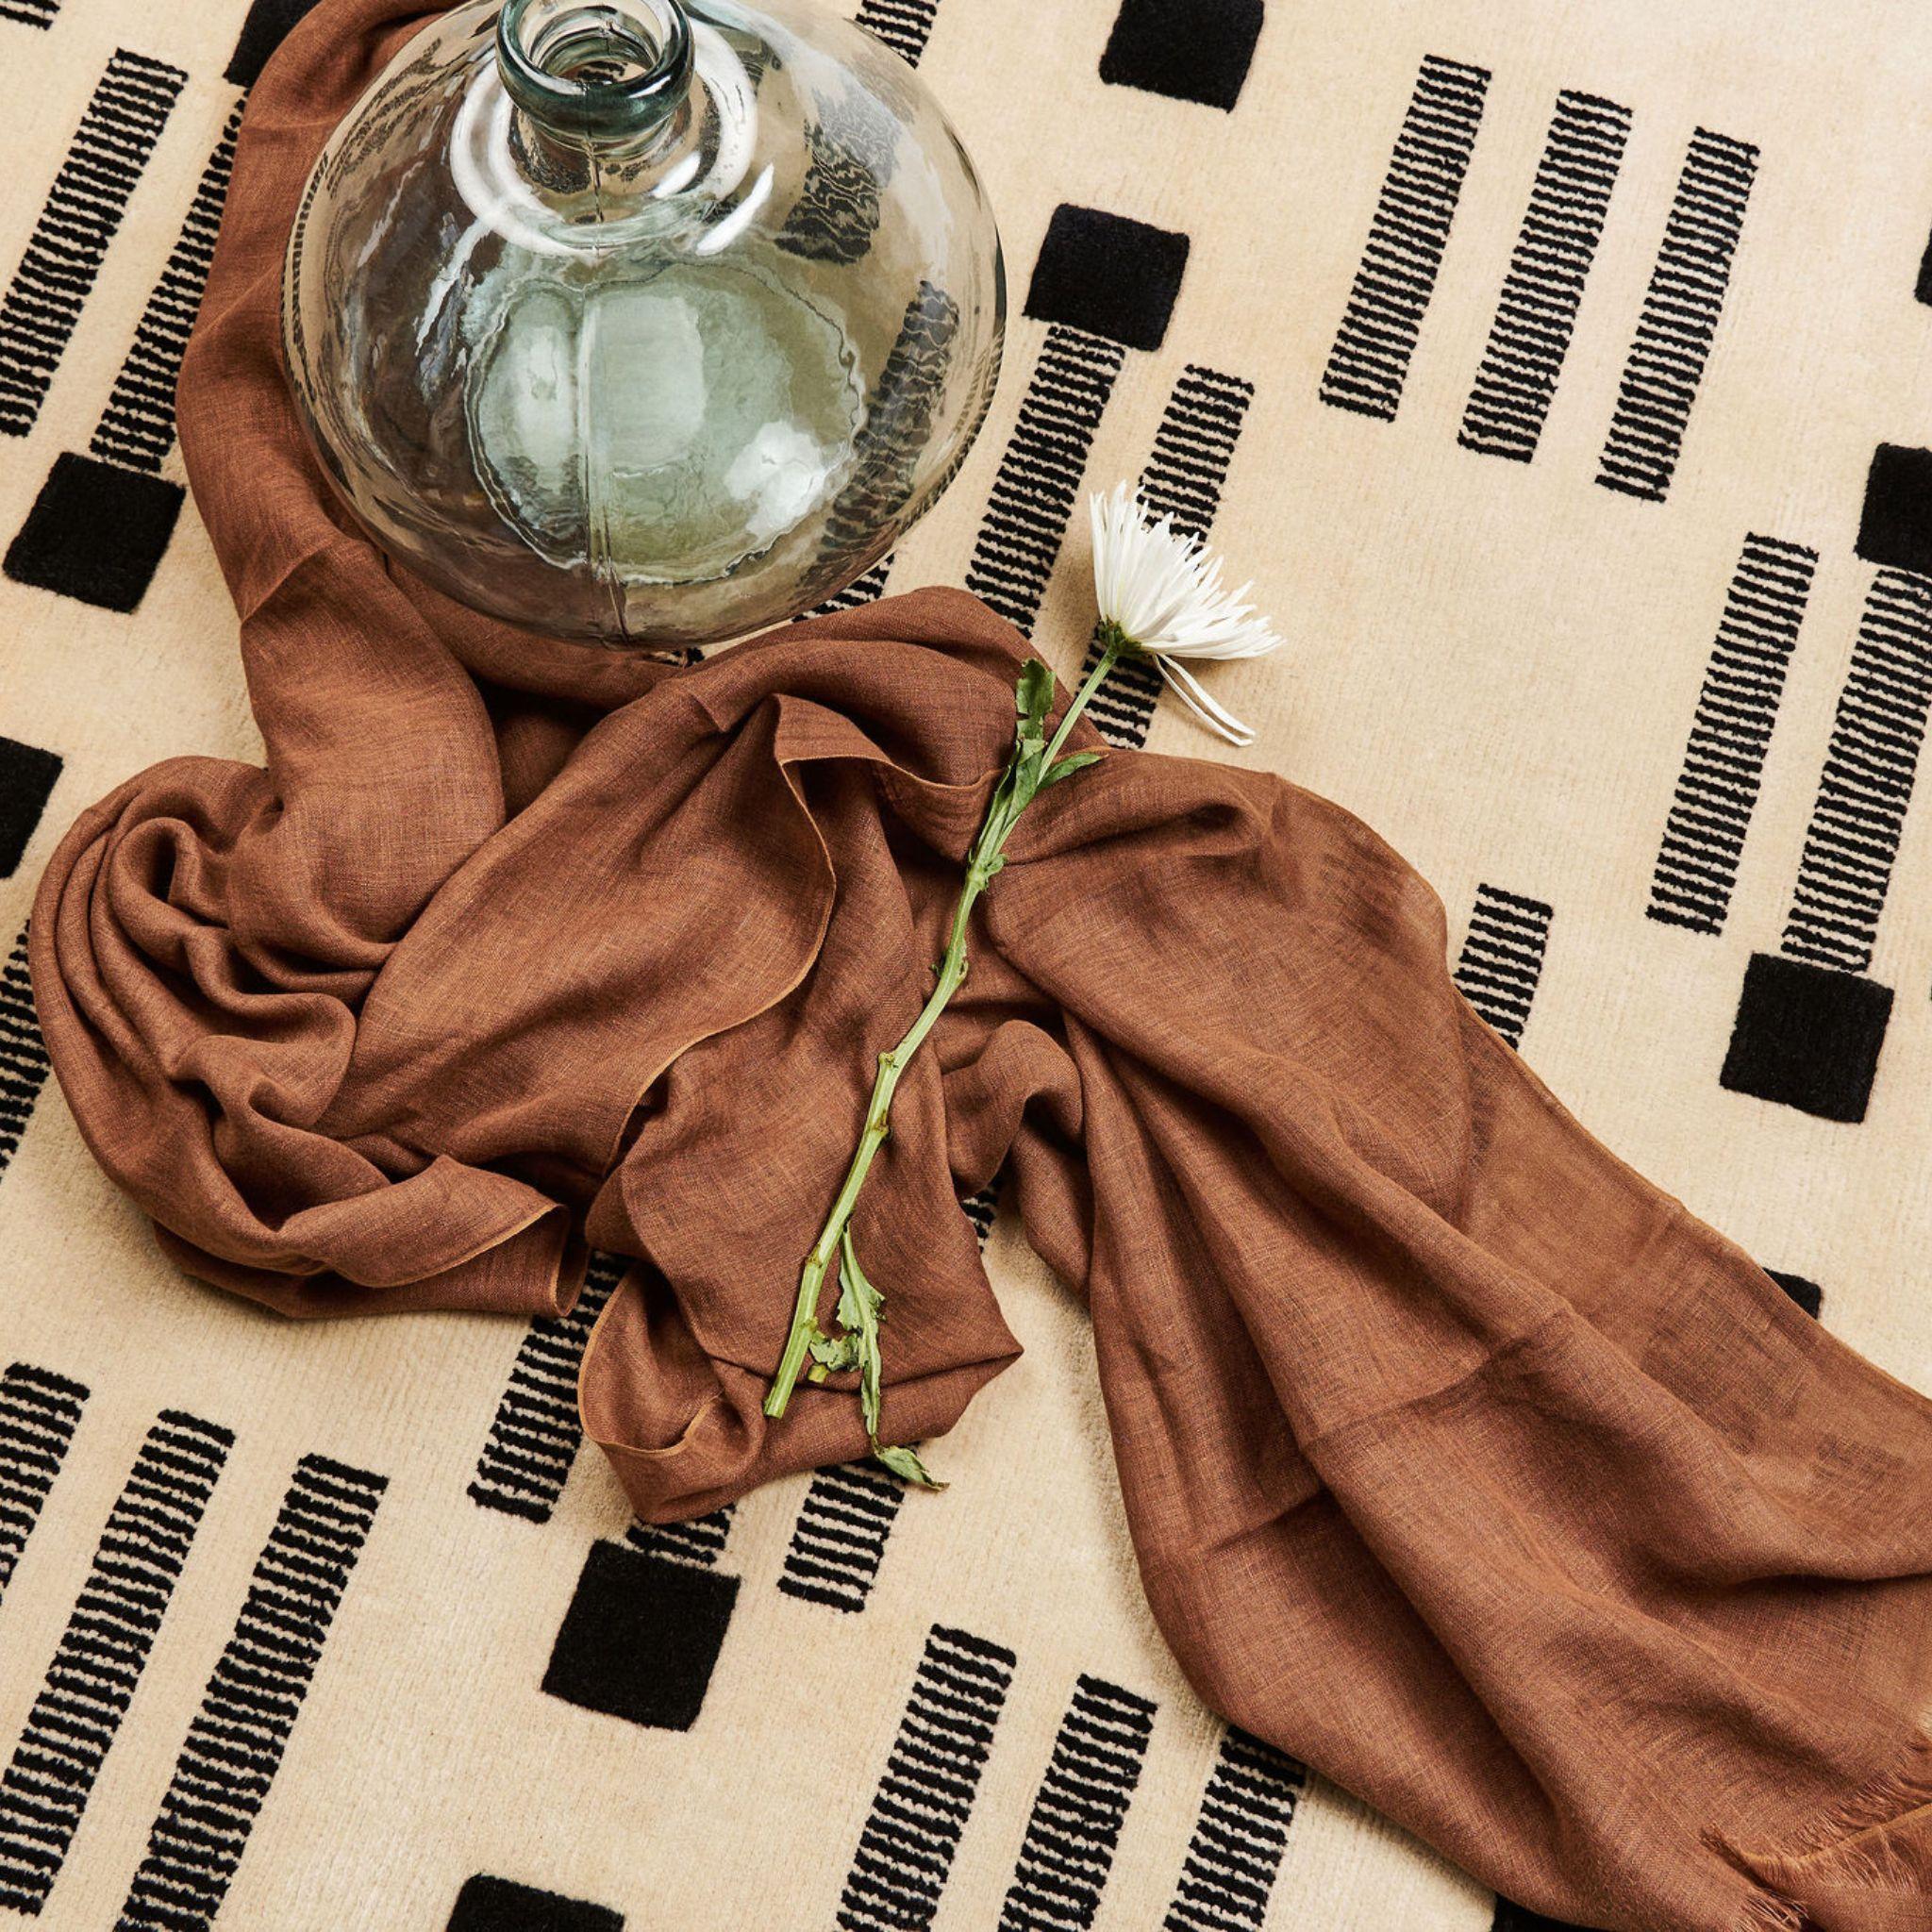 Coco  L'écharpe en lin est une pièce élégante qui s'intègre facilement à la plupart des tenues. Cadeau classique ou achat personnel pour toute l'année, ce foulard tissé à la main permet également de soutenir directement les artisans. Grâce à la